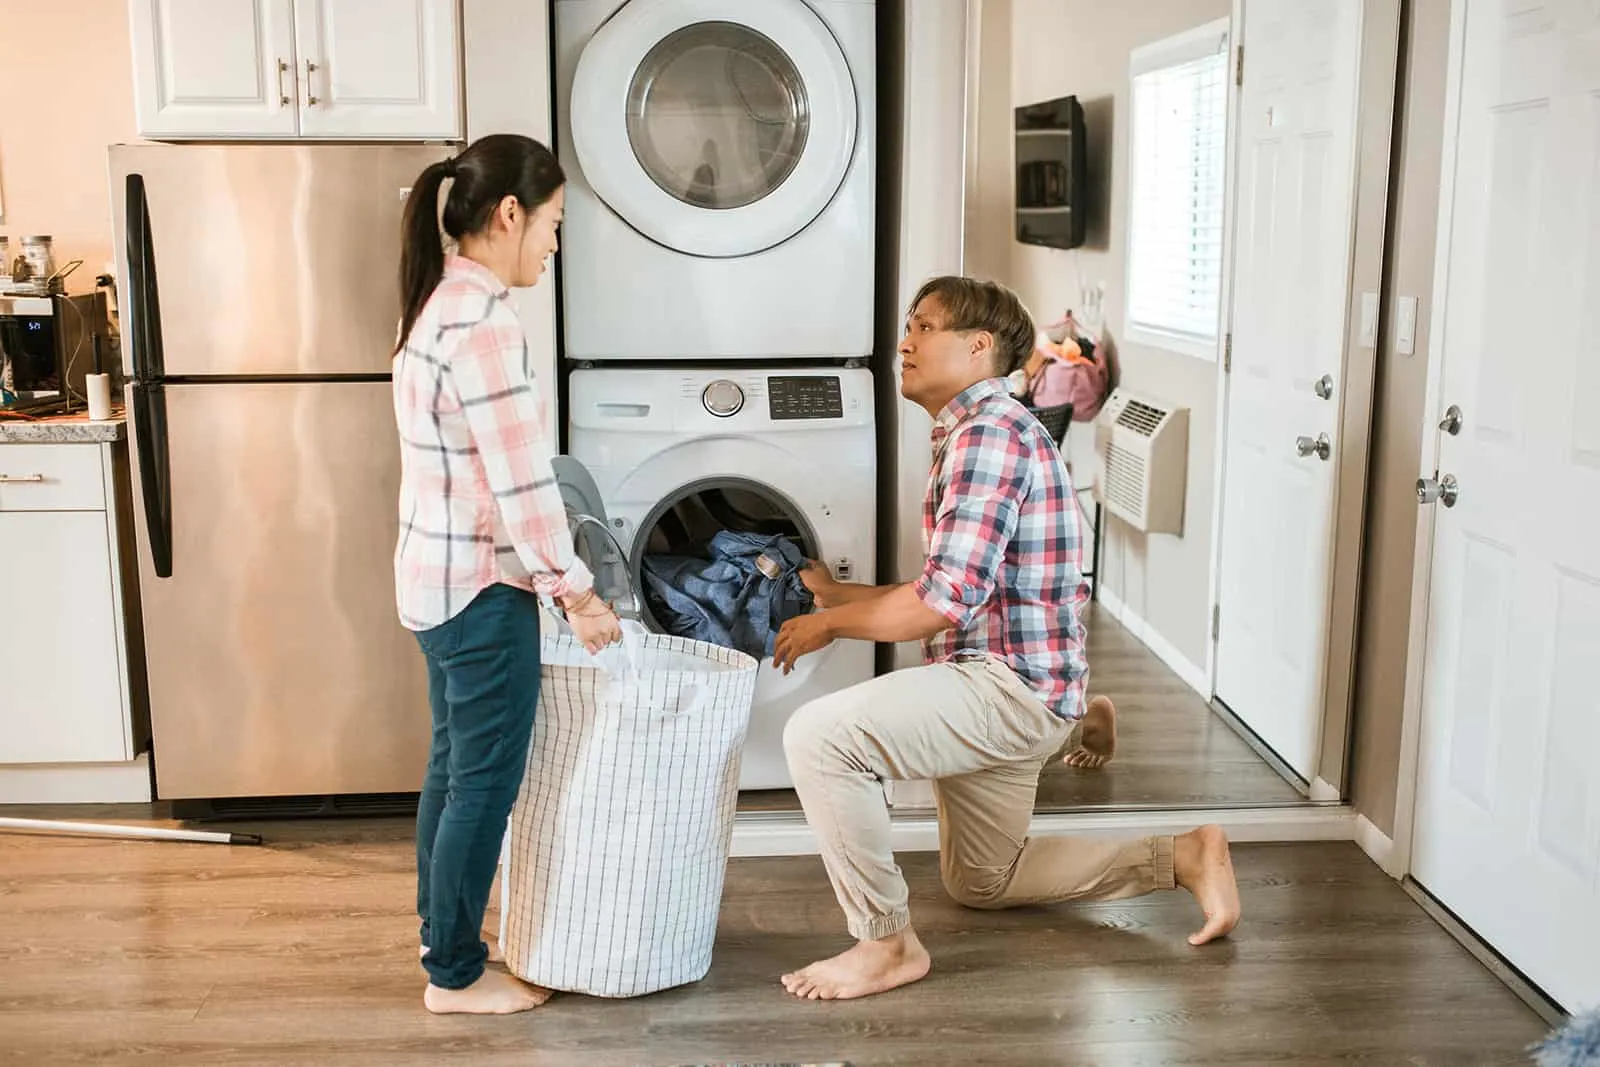 Ein Mann hilft ihrer Frau, Wäsche aus einer Waschmaschine zu holen in einen Korb